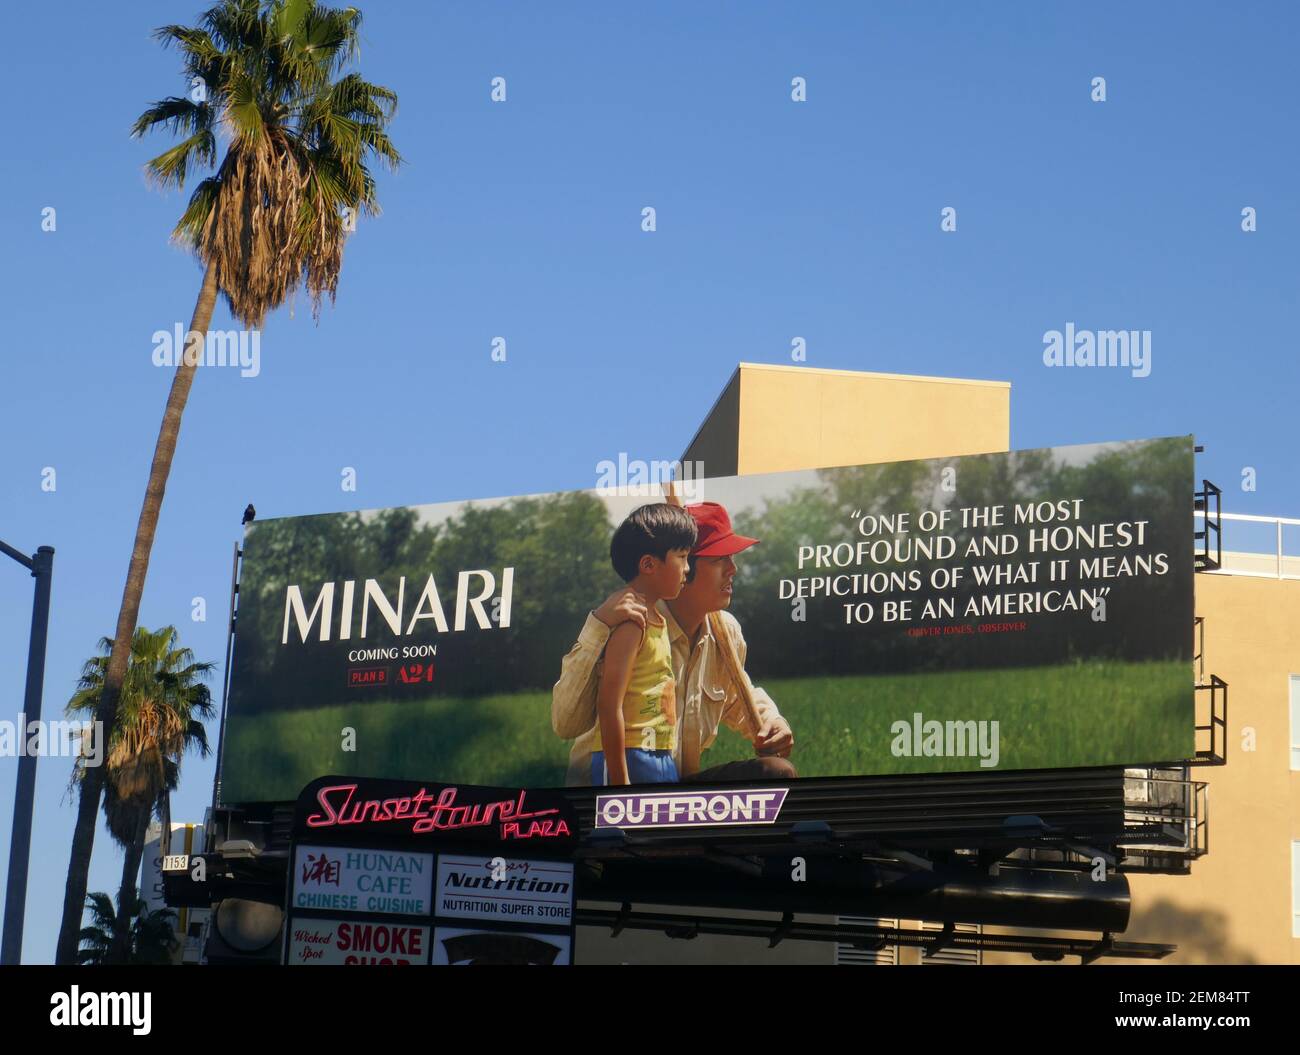 Los Angeles, California, EE.UU. 24 de febrero de 2021 una vista general de la atmósfera Minari Billboard en Sunset Blvd durante la pandemia de Coronavirus Covid-19 el 24 de febrero de 2021 en los Angeles, California, EE.UU. Foto de Barry King/Alamy Stock Foto Foto de stock